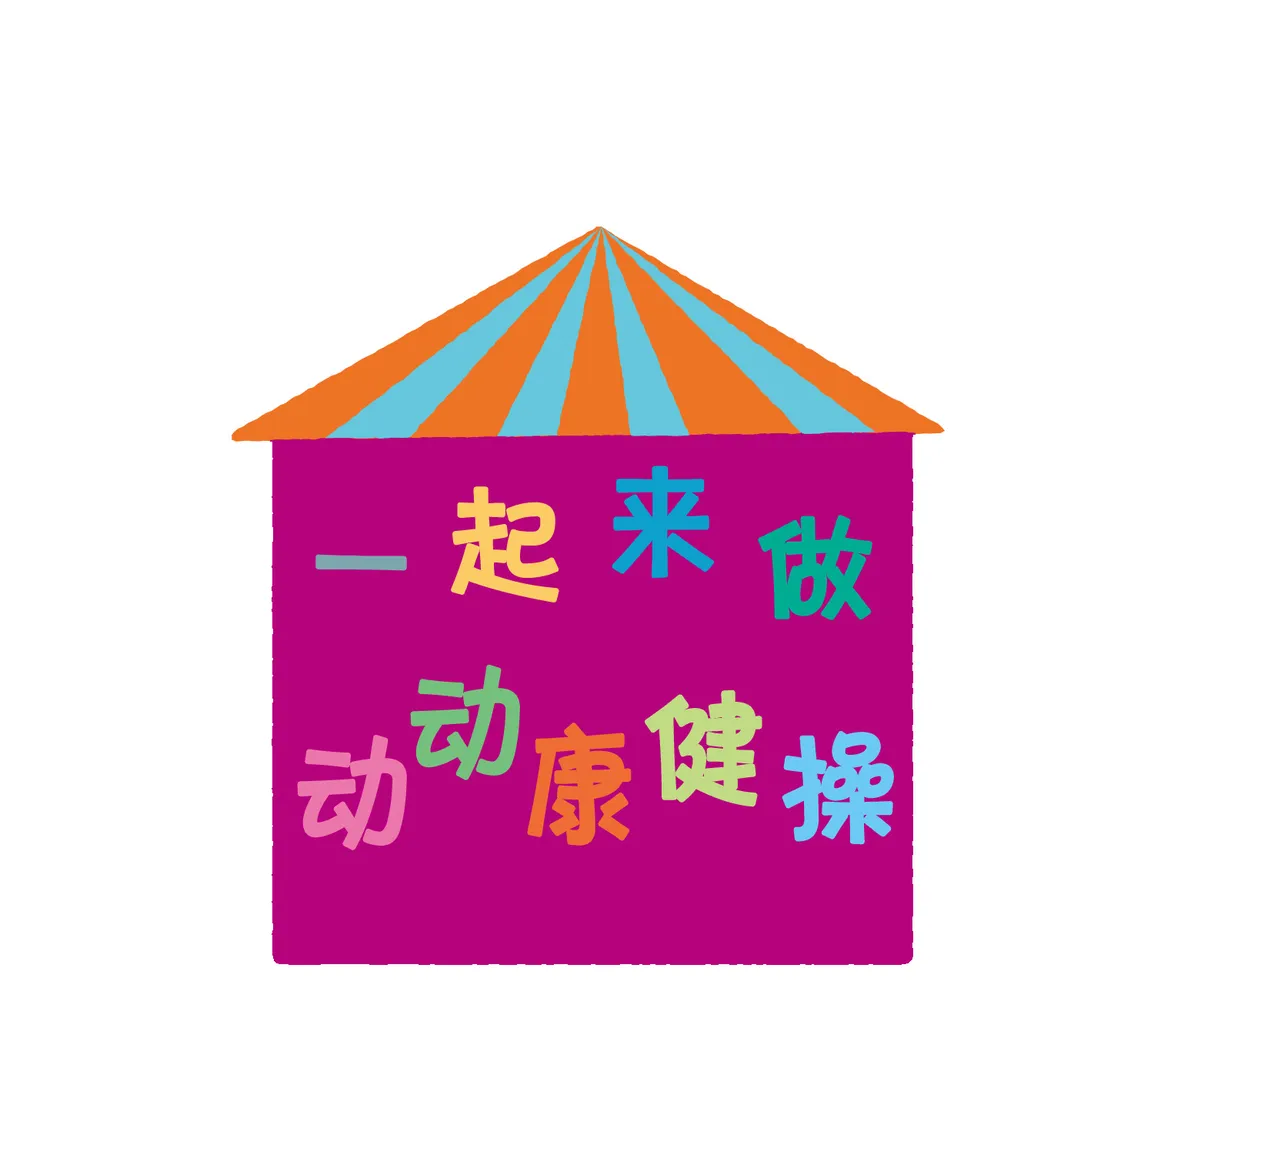 「みんなといっしょたいそう」の中国語版ロゴ